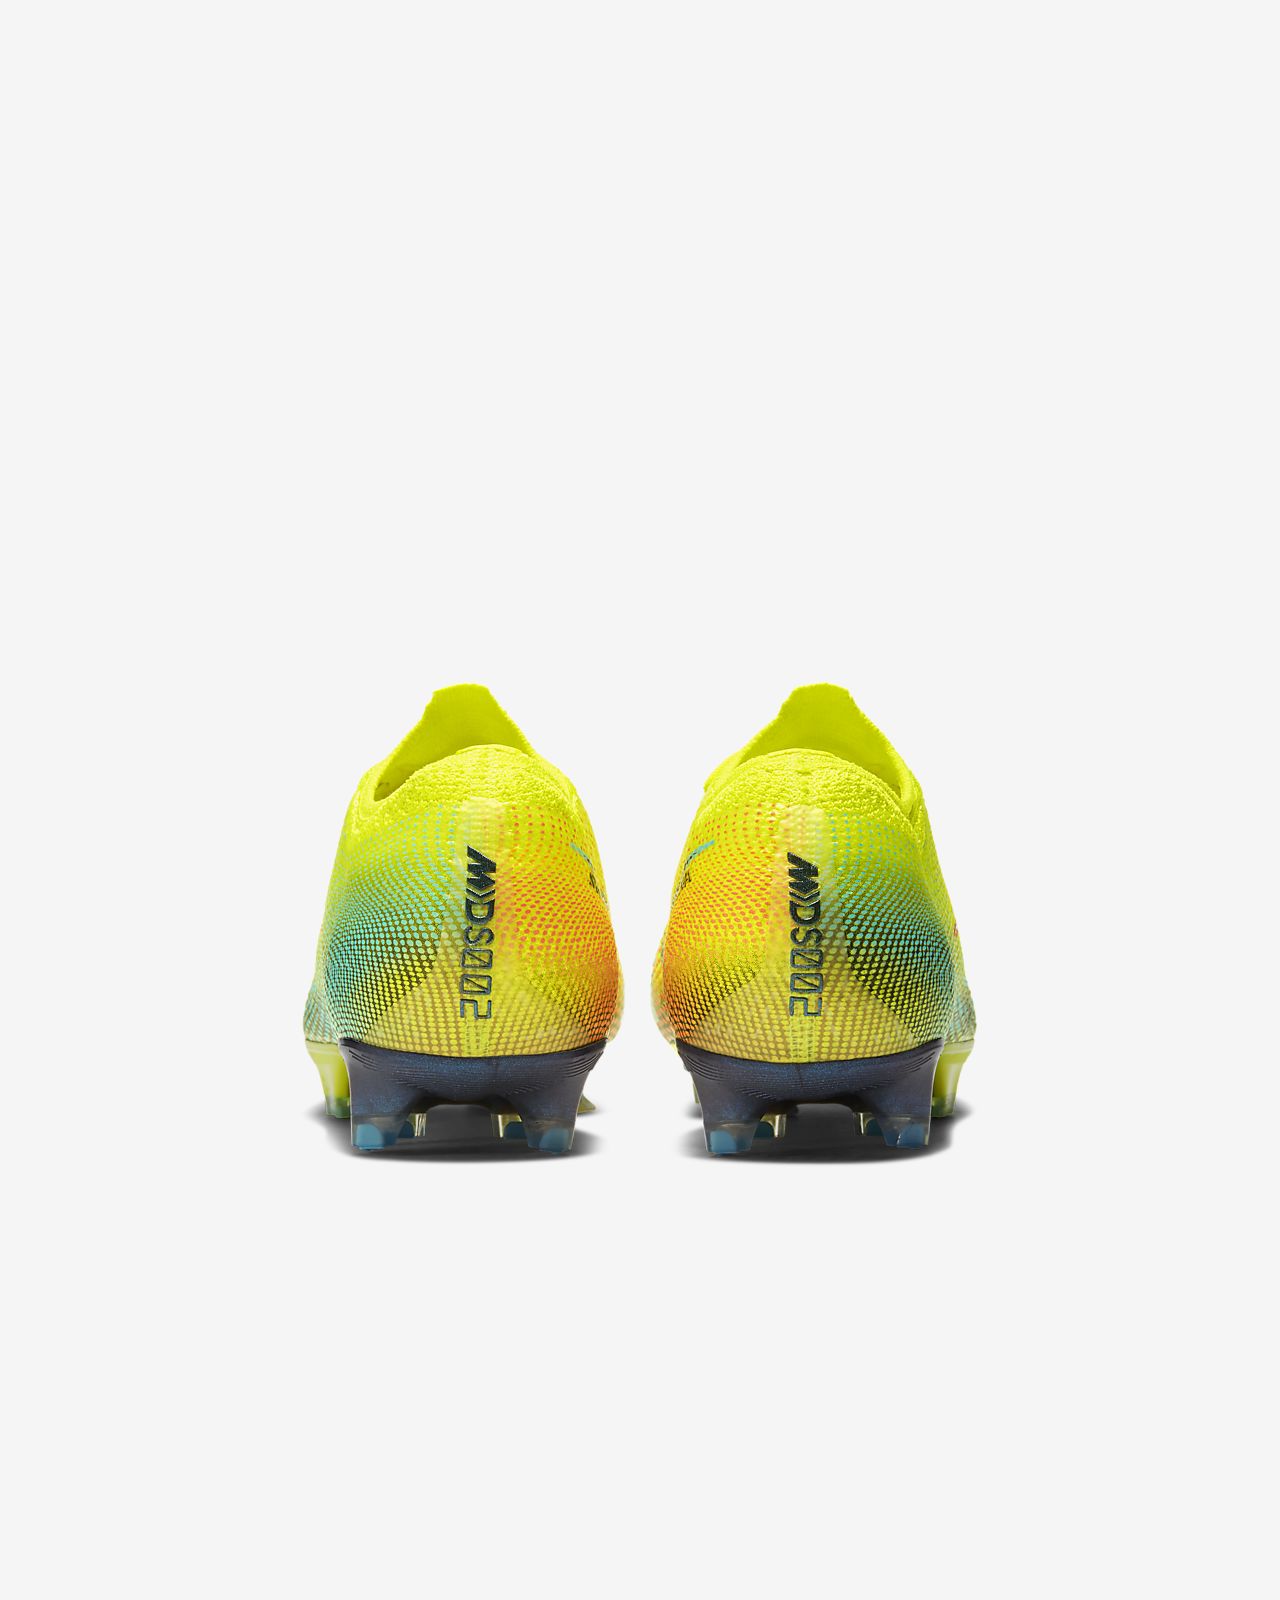 Nike Mercurial Vapor 13 Elite MDS FG Dream Speed 2 - Lemon Venom ...